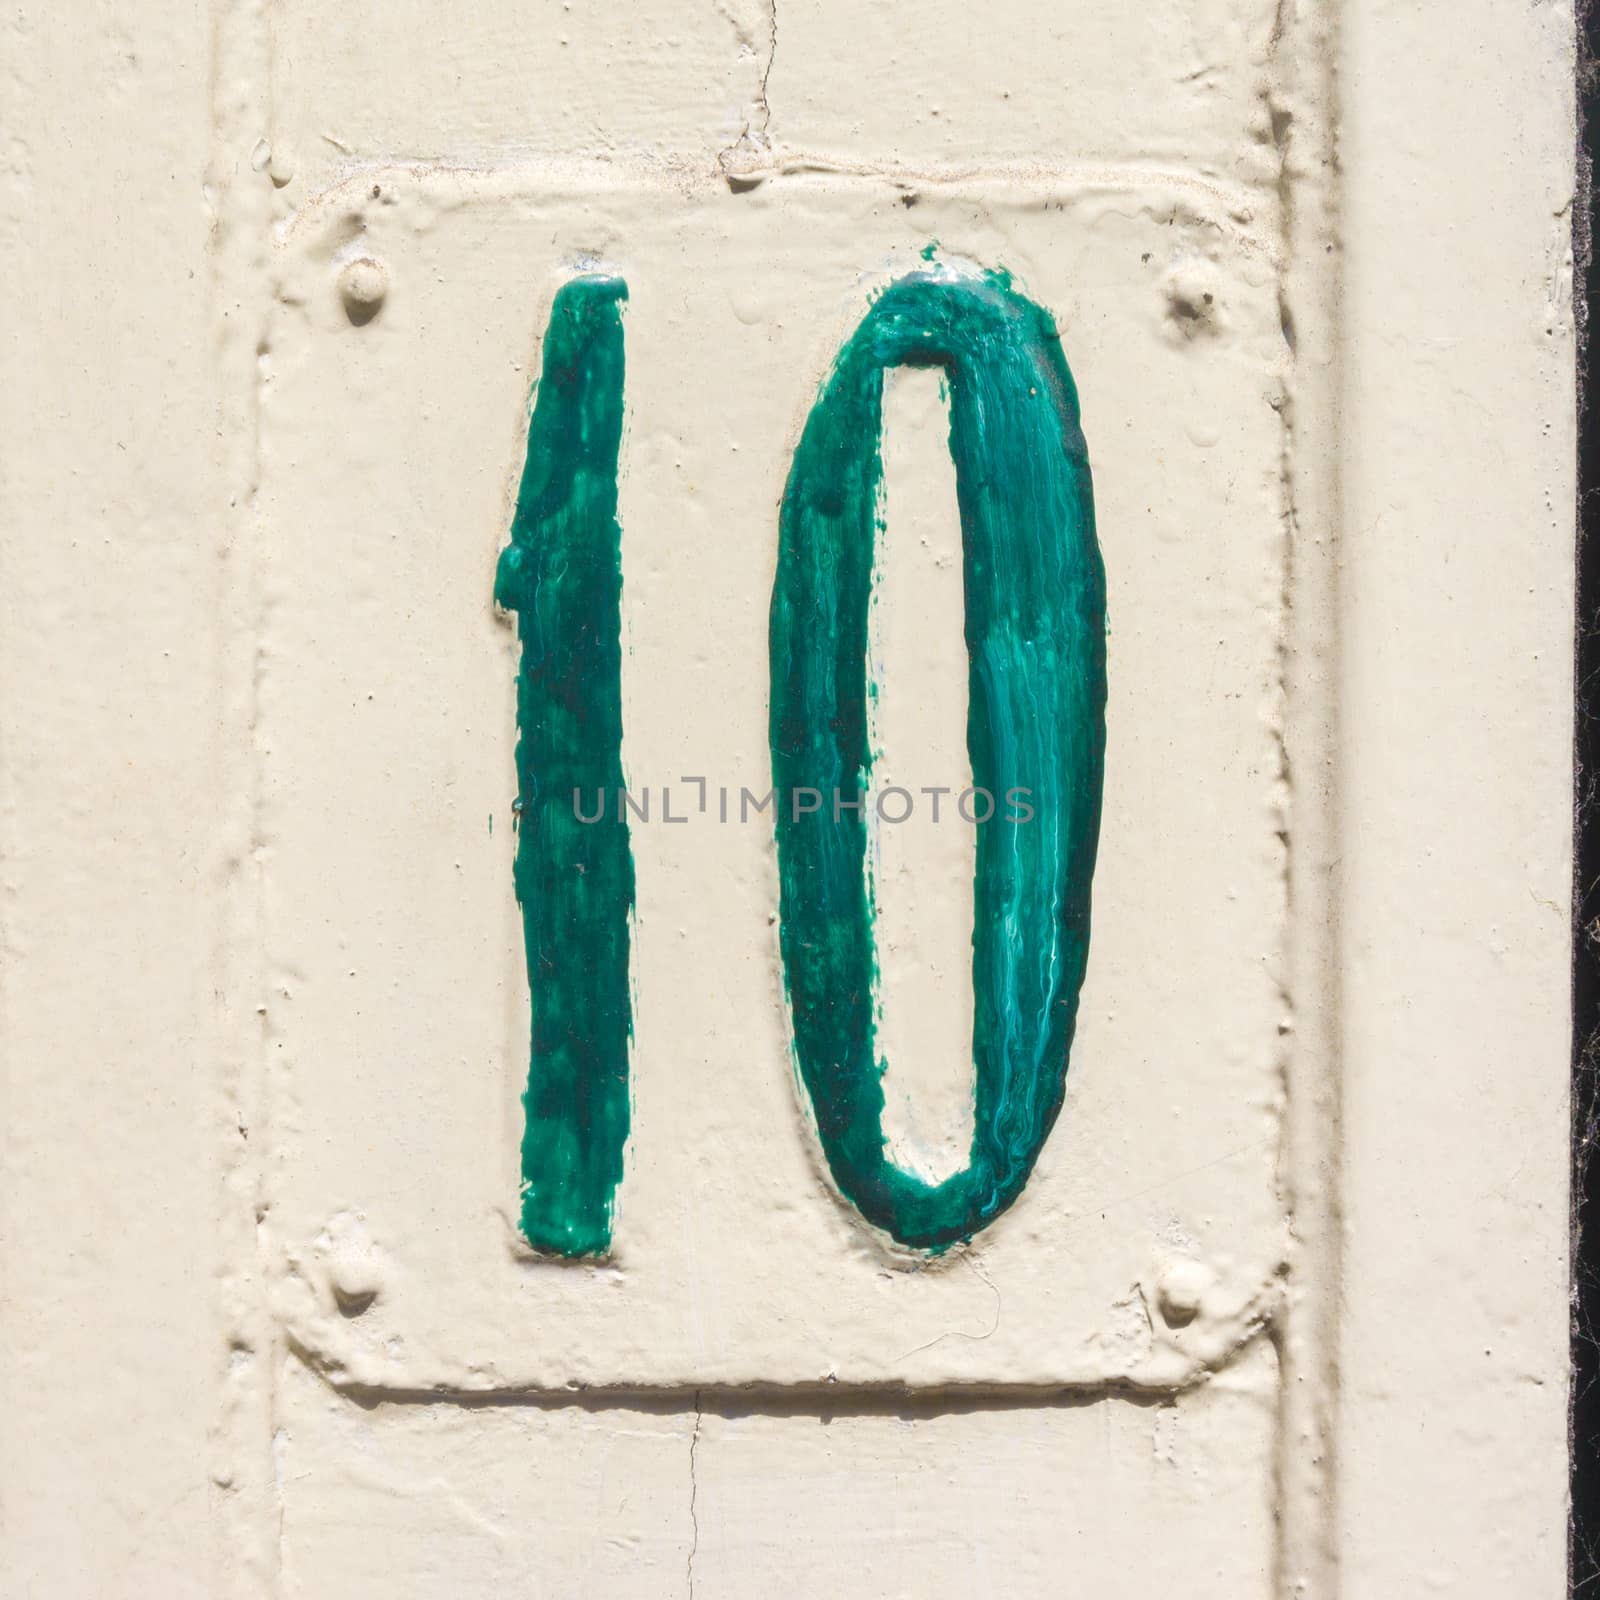 House number ten (10)